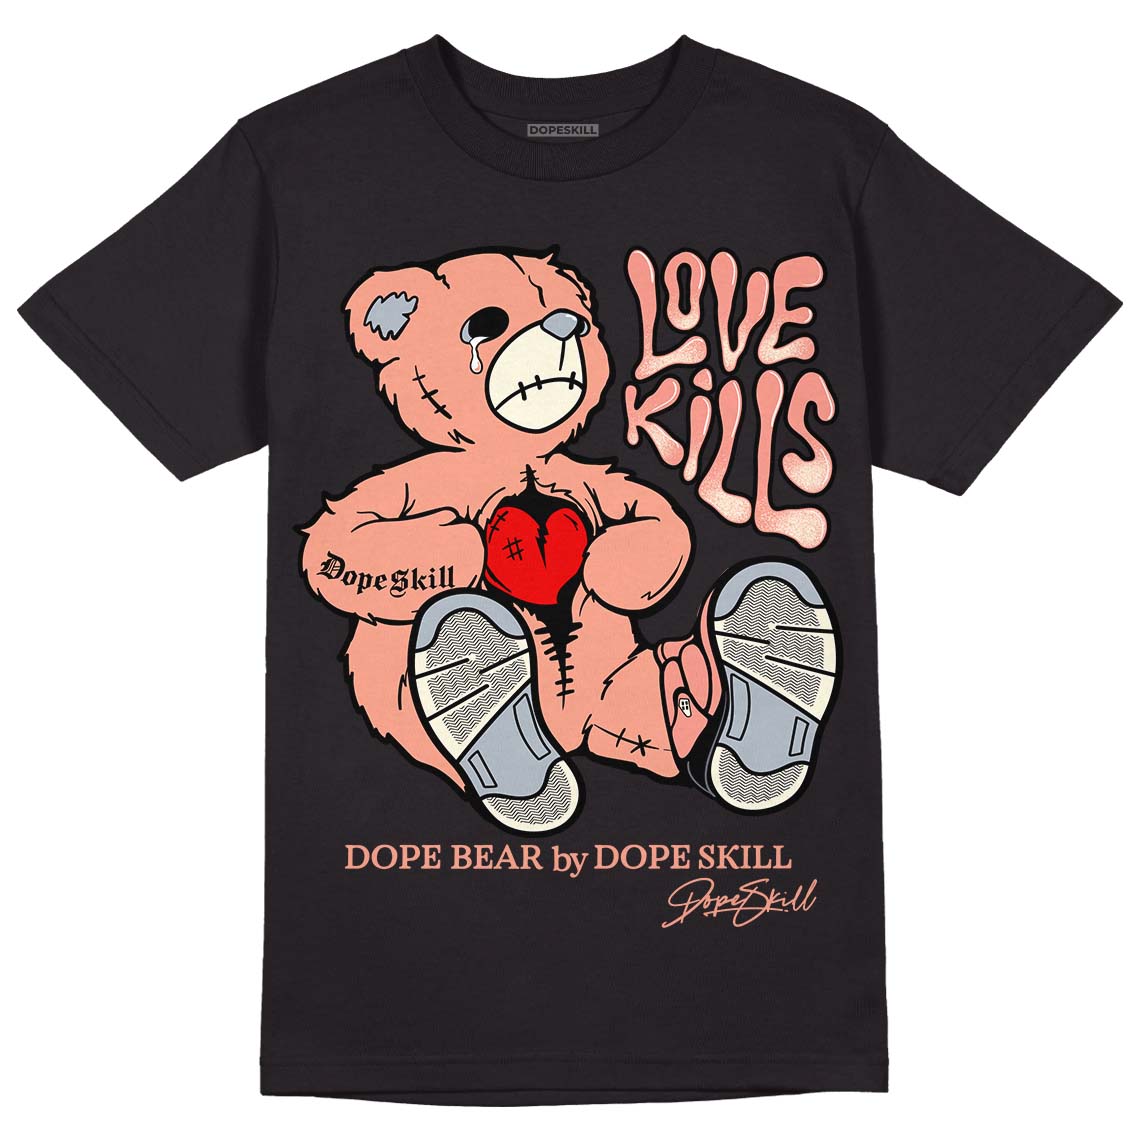 DJ Khaled x Jordan 5 Retro ‘Crimson Bliss’ DopeSkill T-Shirt Love Kills Graphic Streetwear - Black